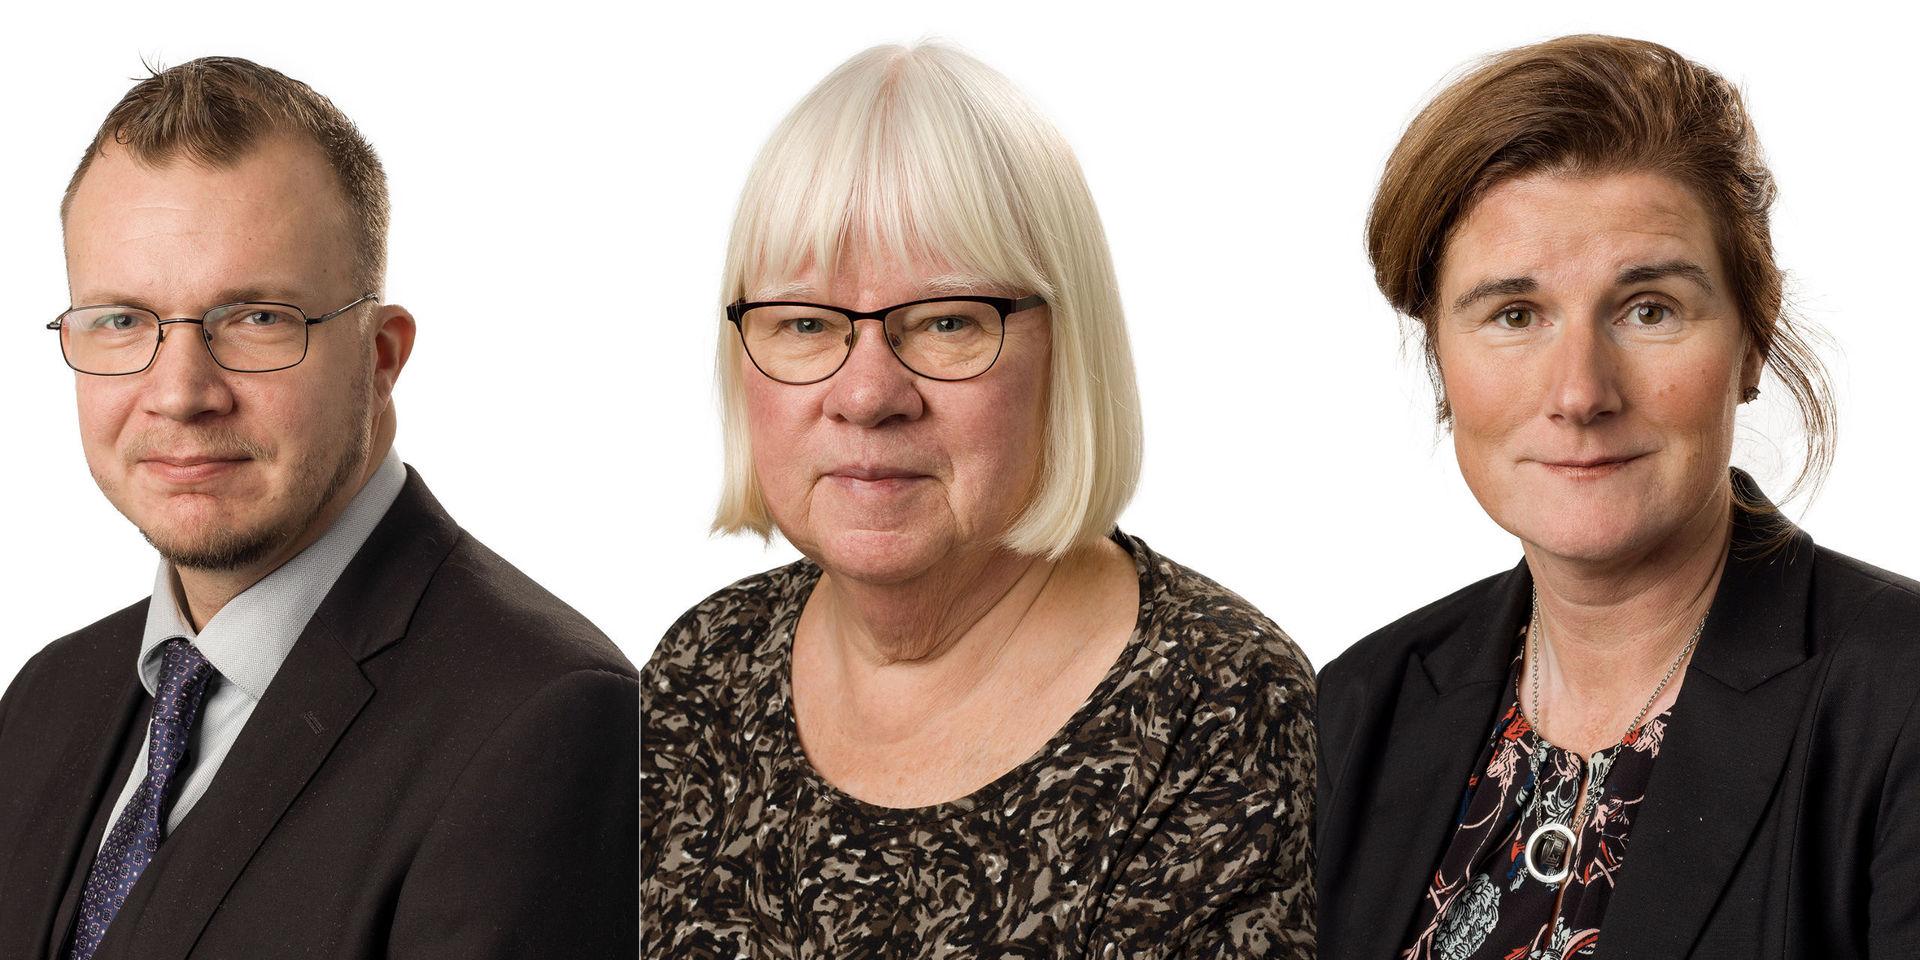 Heikki Klaavuniemi (SD), Eva Olofsson (V), och Helen Eliasson (S) är regionråd i opposition. De lade inför regionstyrelsens sammanträde två olika yrkanden om att behålla sjukvårdens larmcentral utan förändringar.